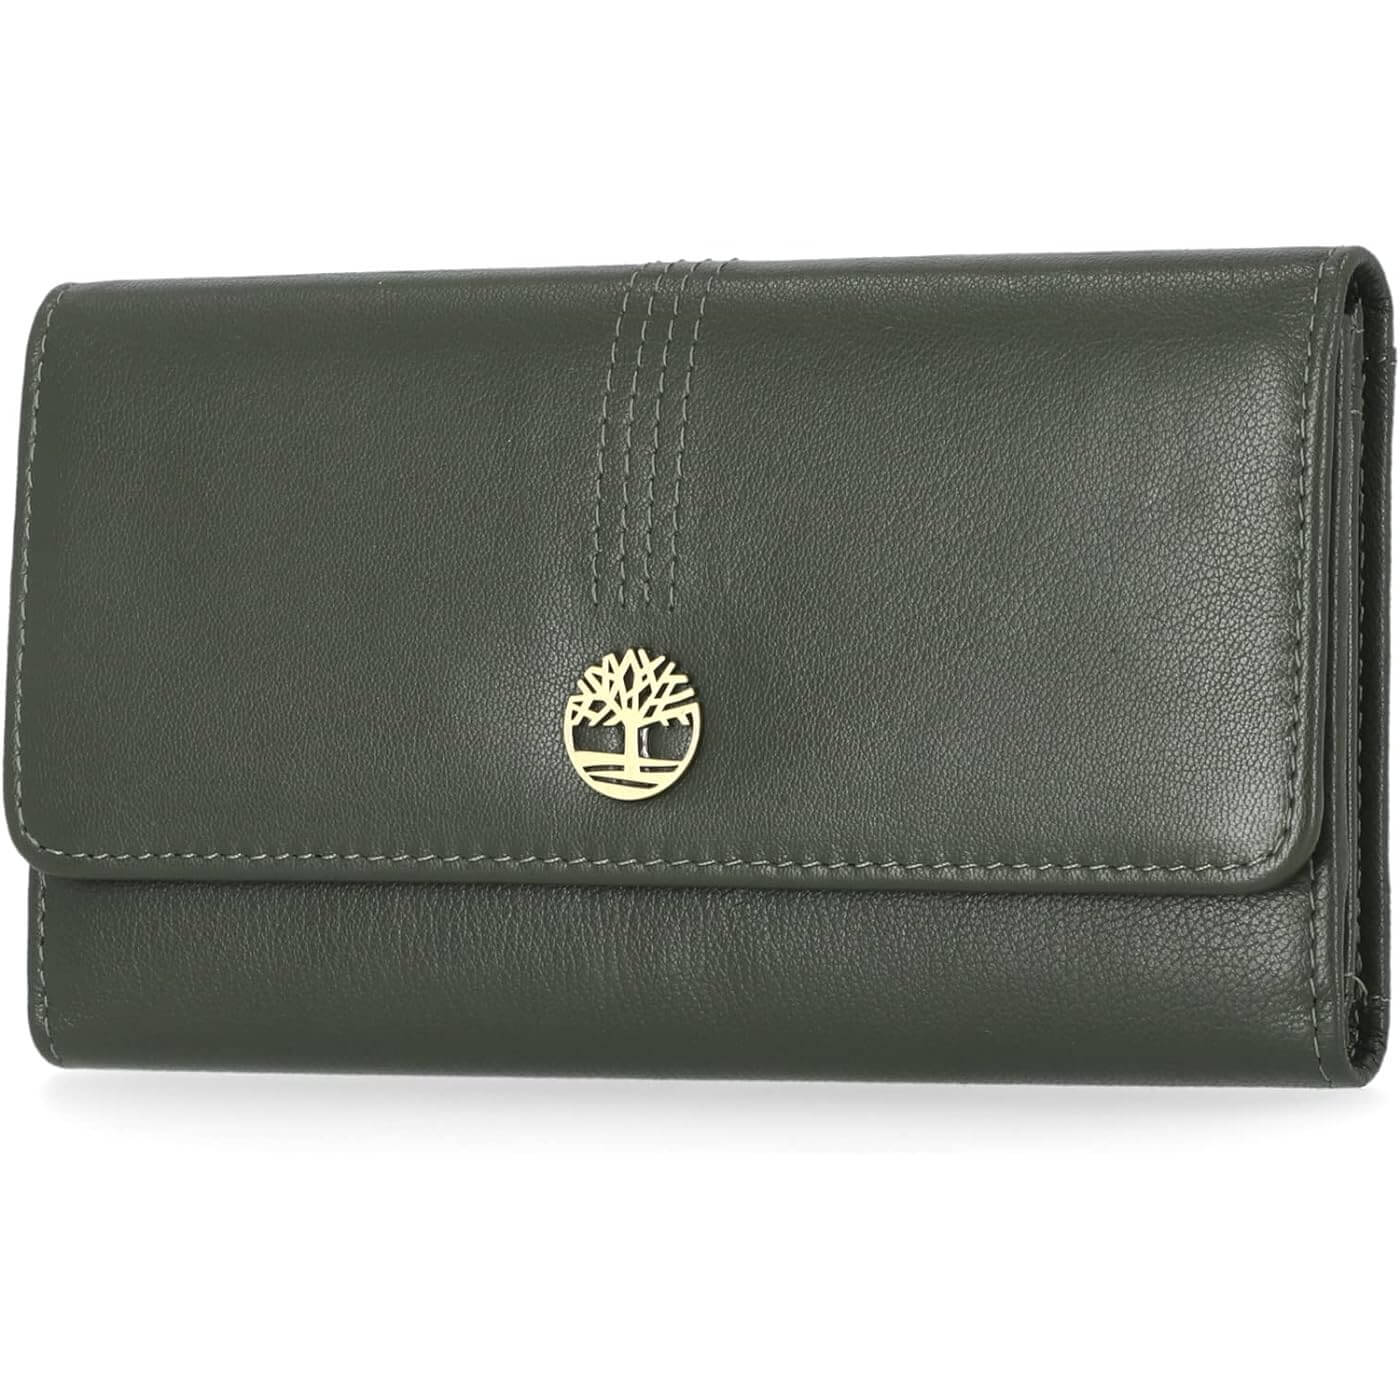 Кожаный кошелек-клатч Timberland RFID Flap Organizer, серо-зеленый женский кошелек из натуральной кожи дамский удлиненный клатч с двойной молнией и rfid кредитница бумажники для телефона